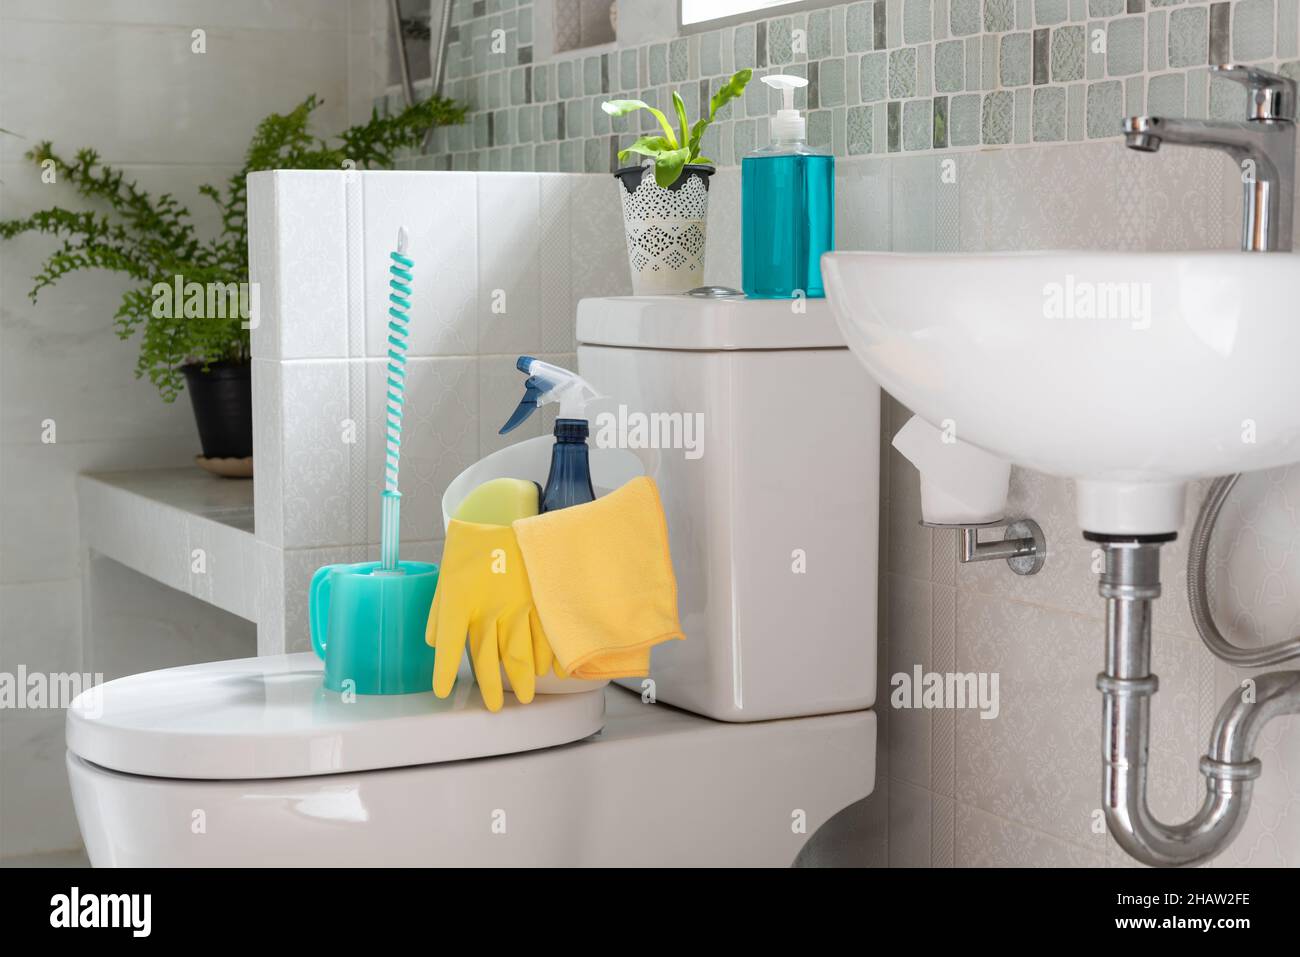 Korb mit Reinigungsmitteln auf Toilettenschüssel im modernen Badezimmer mit frischem grünen Farn im Zimmer Stockfoto